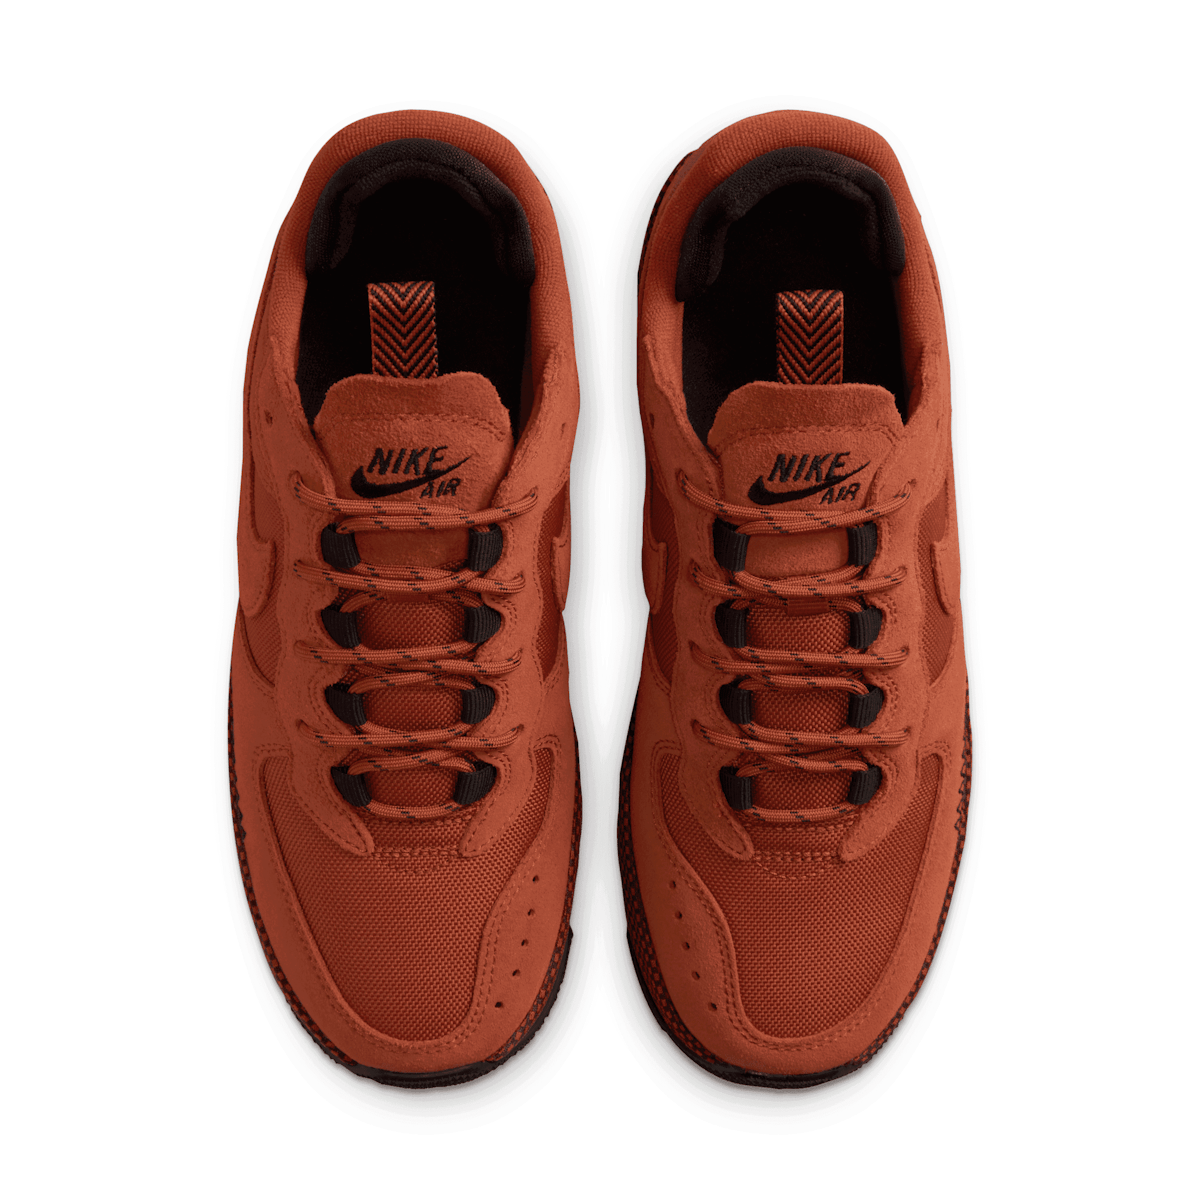 Nike Air Force 1 Wild Unisex Sneakers in Rust Orange